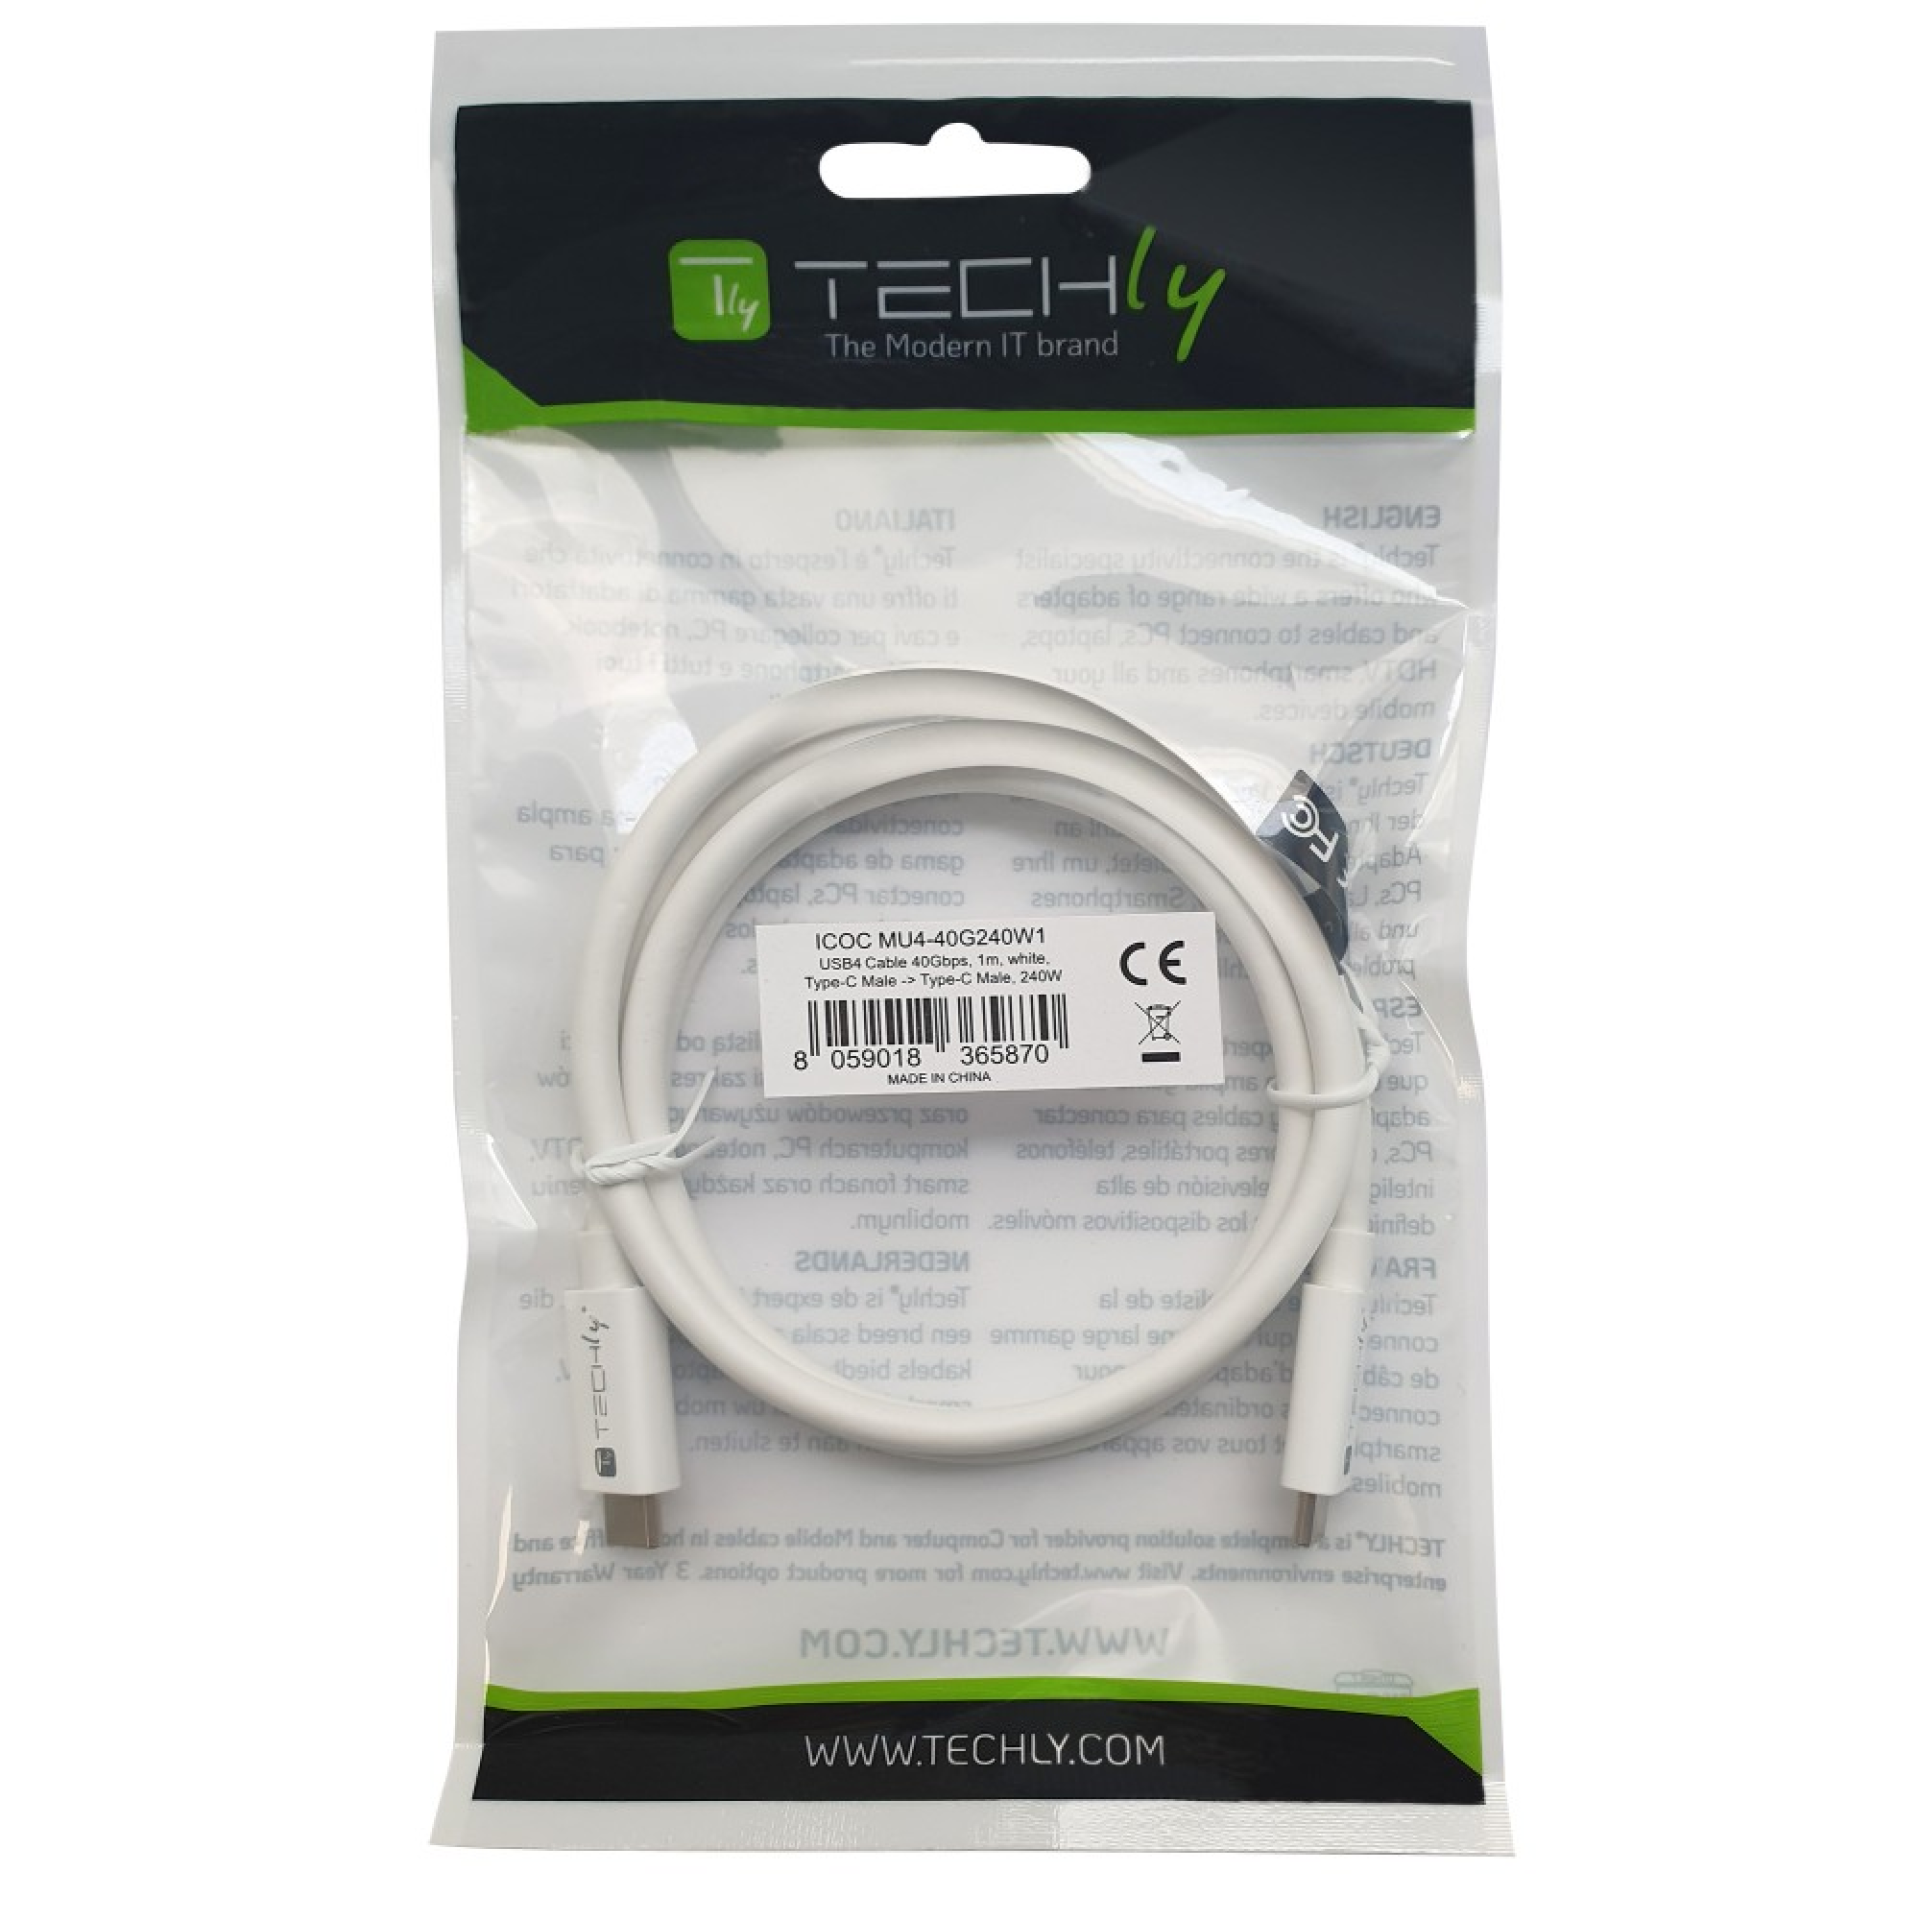 Techly USB4 Gen3 USB-C EPR Kabel 40G 240W 8K zertifiziert 1m weiß